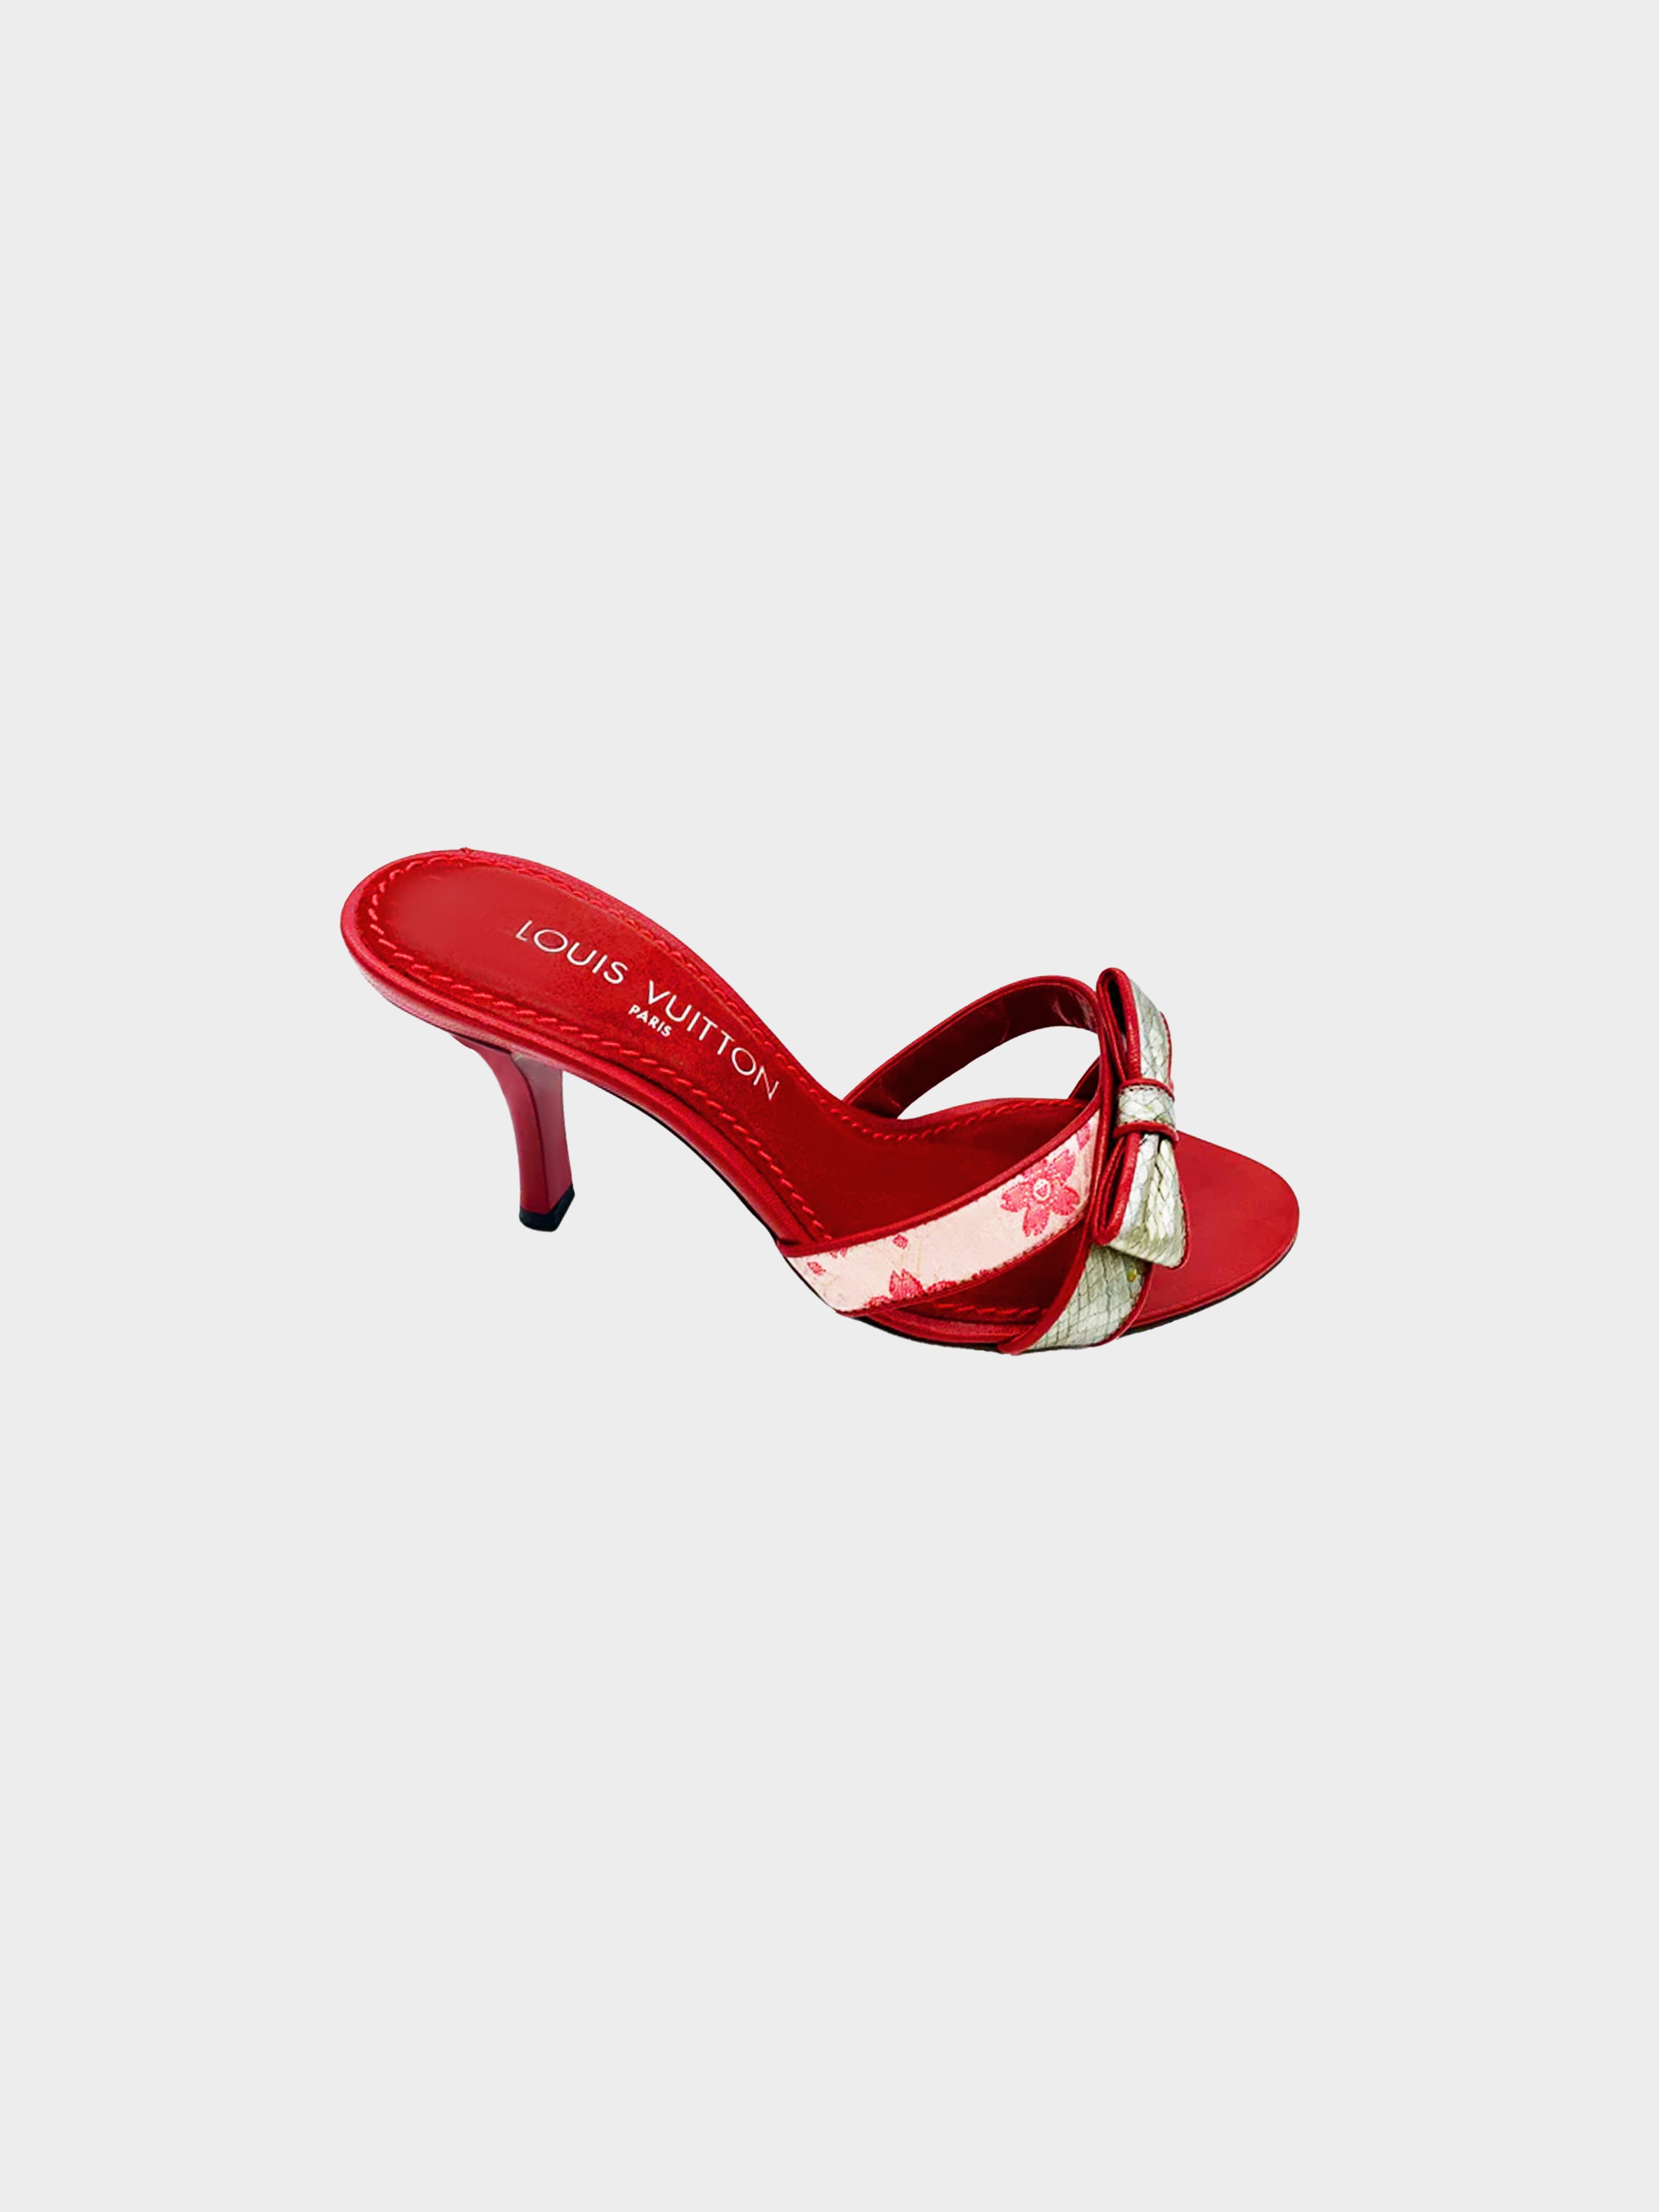 Louis Vuitton Red/Black Patent Leather Ankle Strap Sandals Size 36 Louis  Vuitton